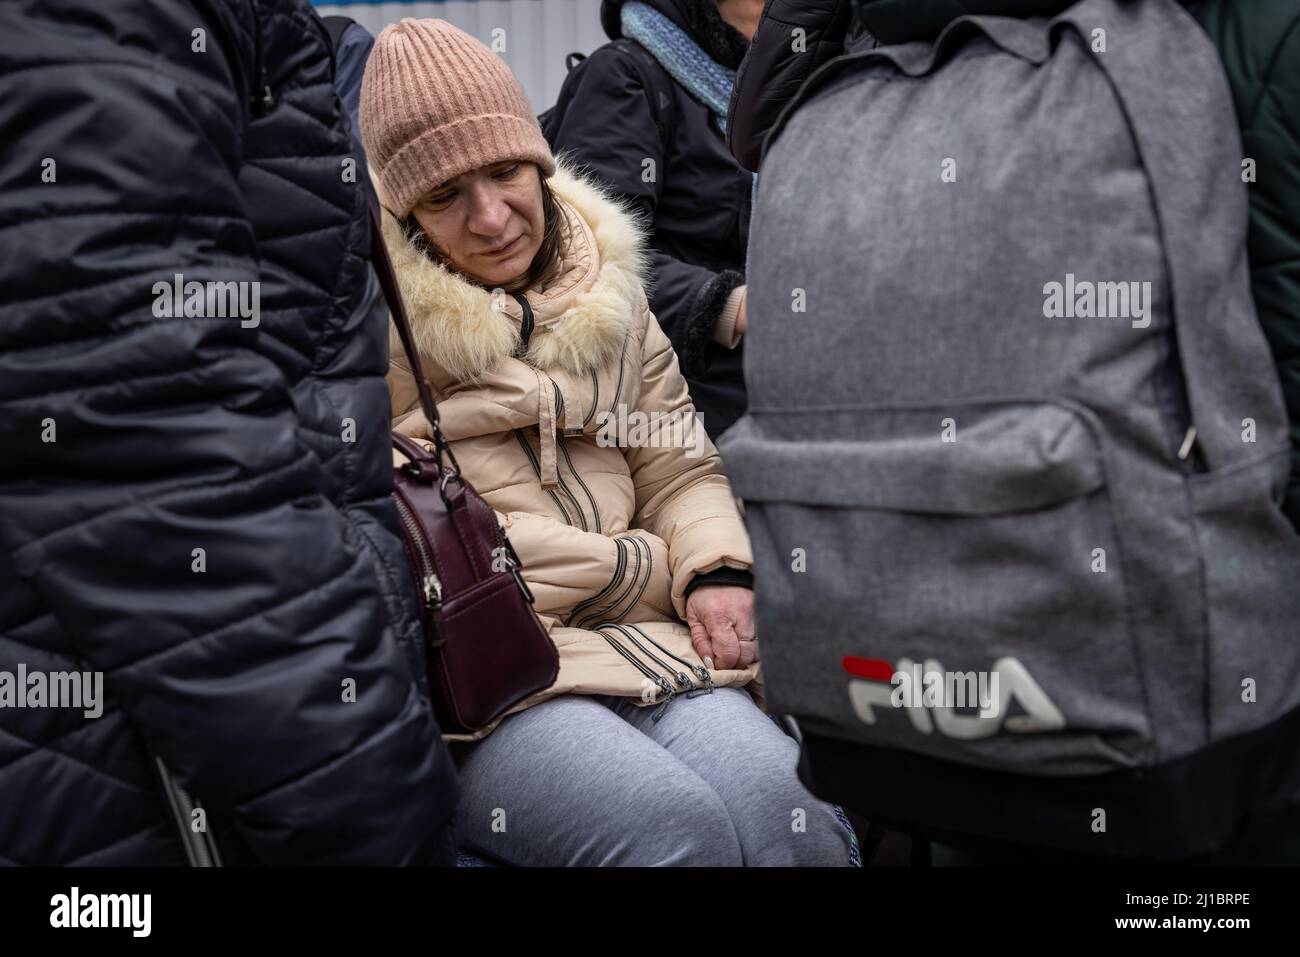 Flüchtlinge aus der Ukraine haben die zentrale Flüchtlingssammelstelle in einem Logistikzentrum in der Nähe von Korczowa im polnisch-ukrainischen Grenzgebiet erreicht. Hier werden sie mit Lebensmitteln und Kleidung versorgt und dann per Bus in andere Städte transportiert. Stockfoto